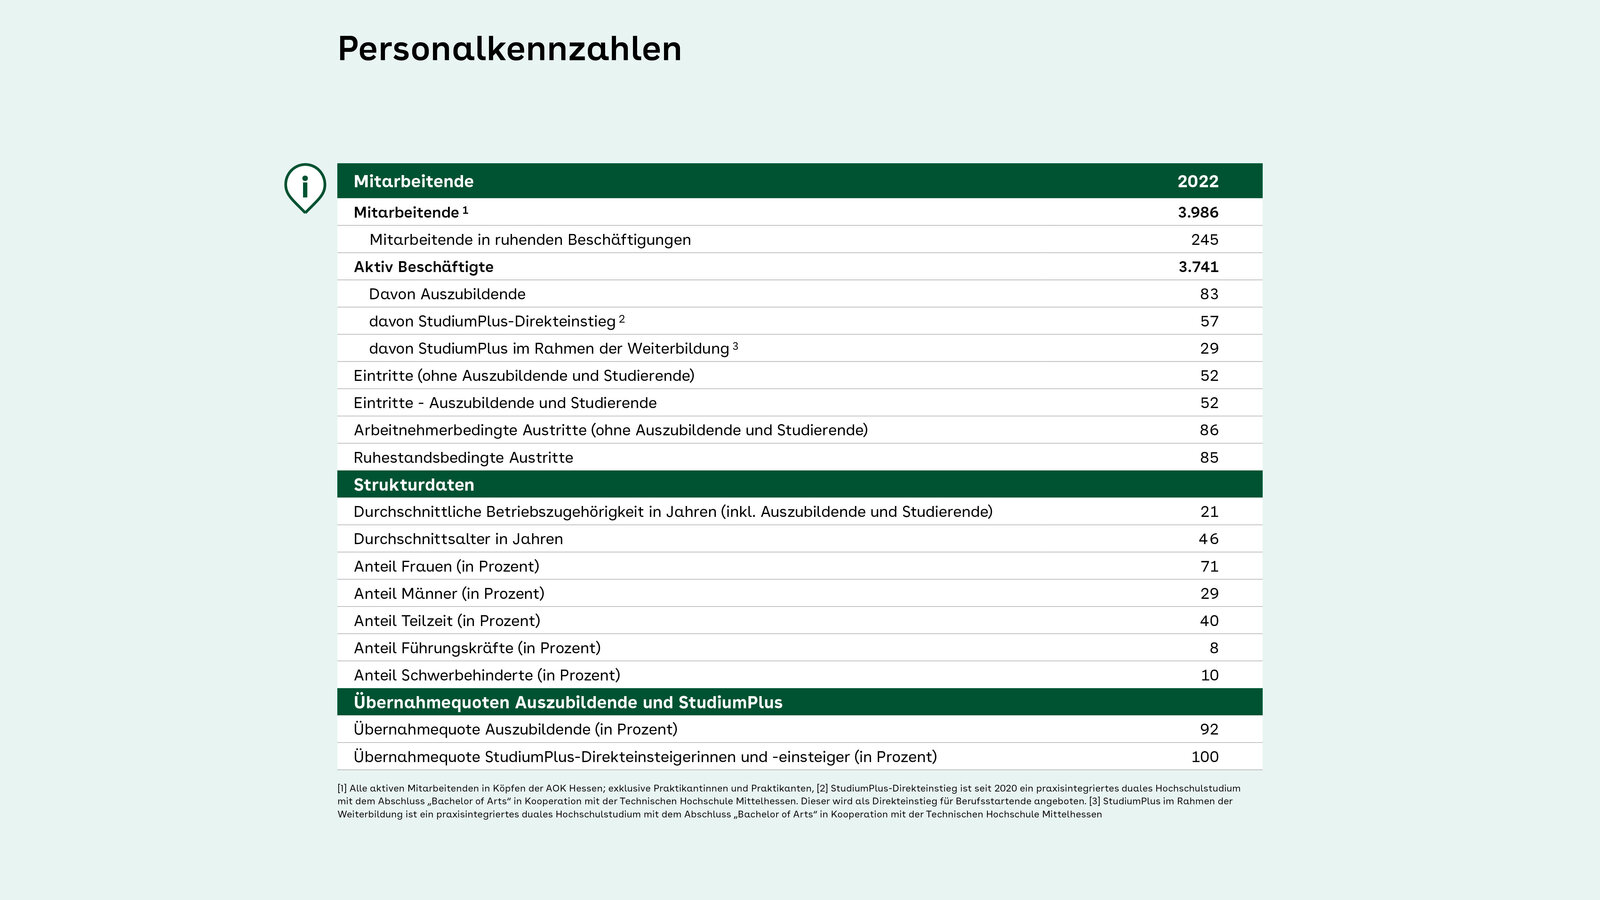 Tabelle mit den Personalkennzahlen der AOK Hessen